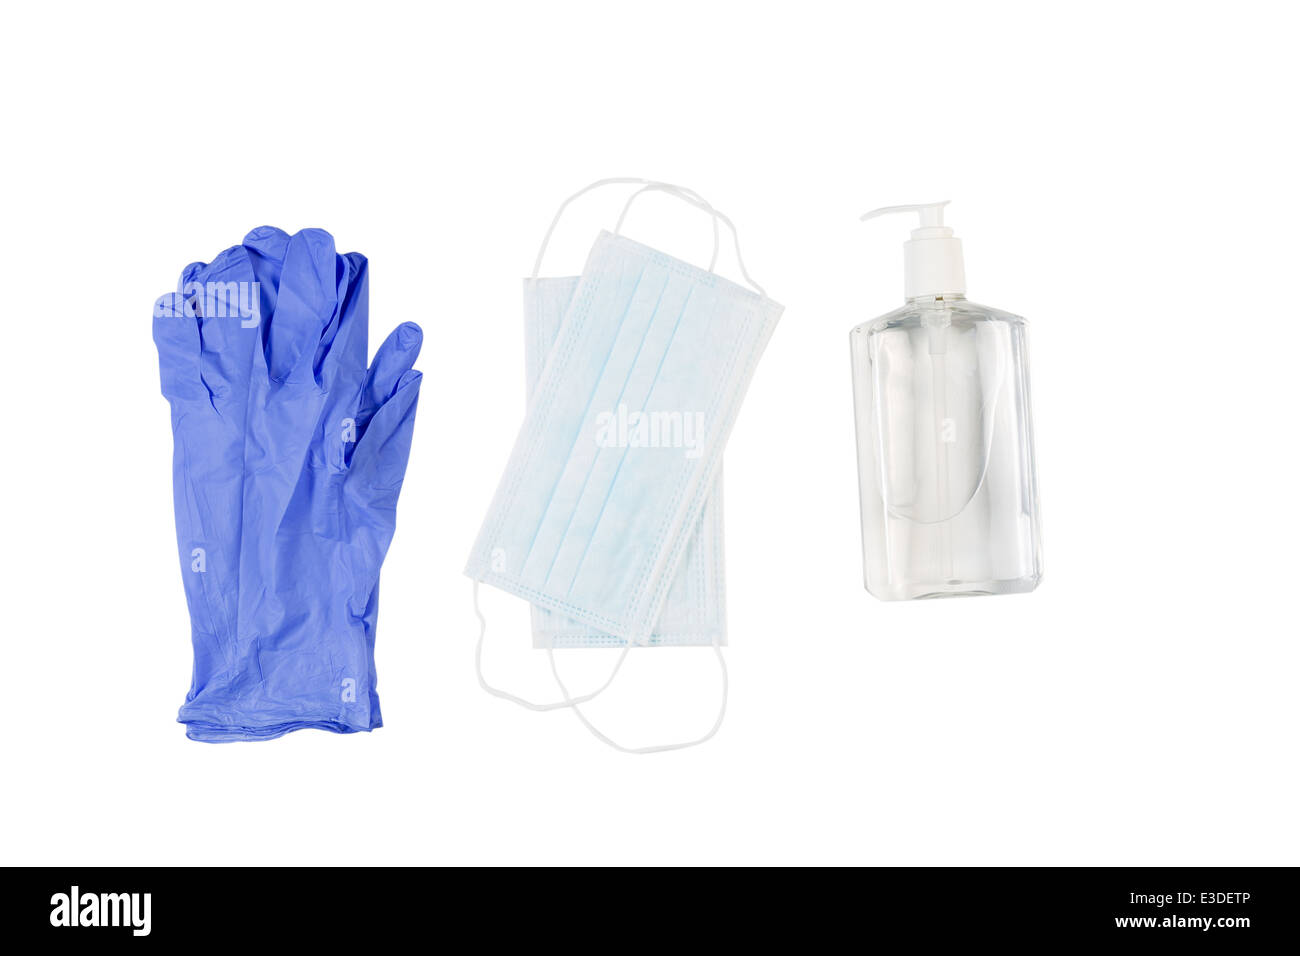 Vista horizontal de nuevos artículos de higiene compuesto de guantes de látex, mascarilla y desinfectante para manos aislado en blanco Foto de stock